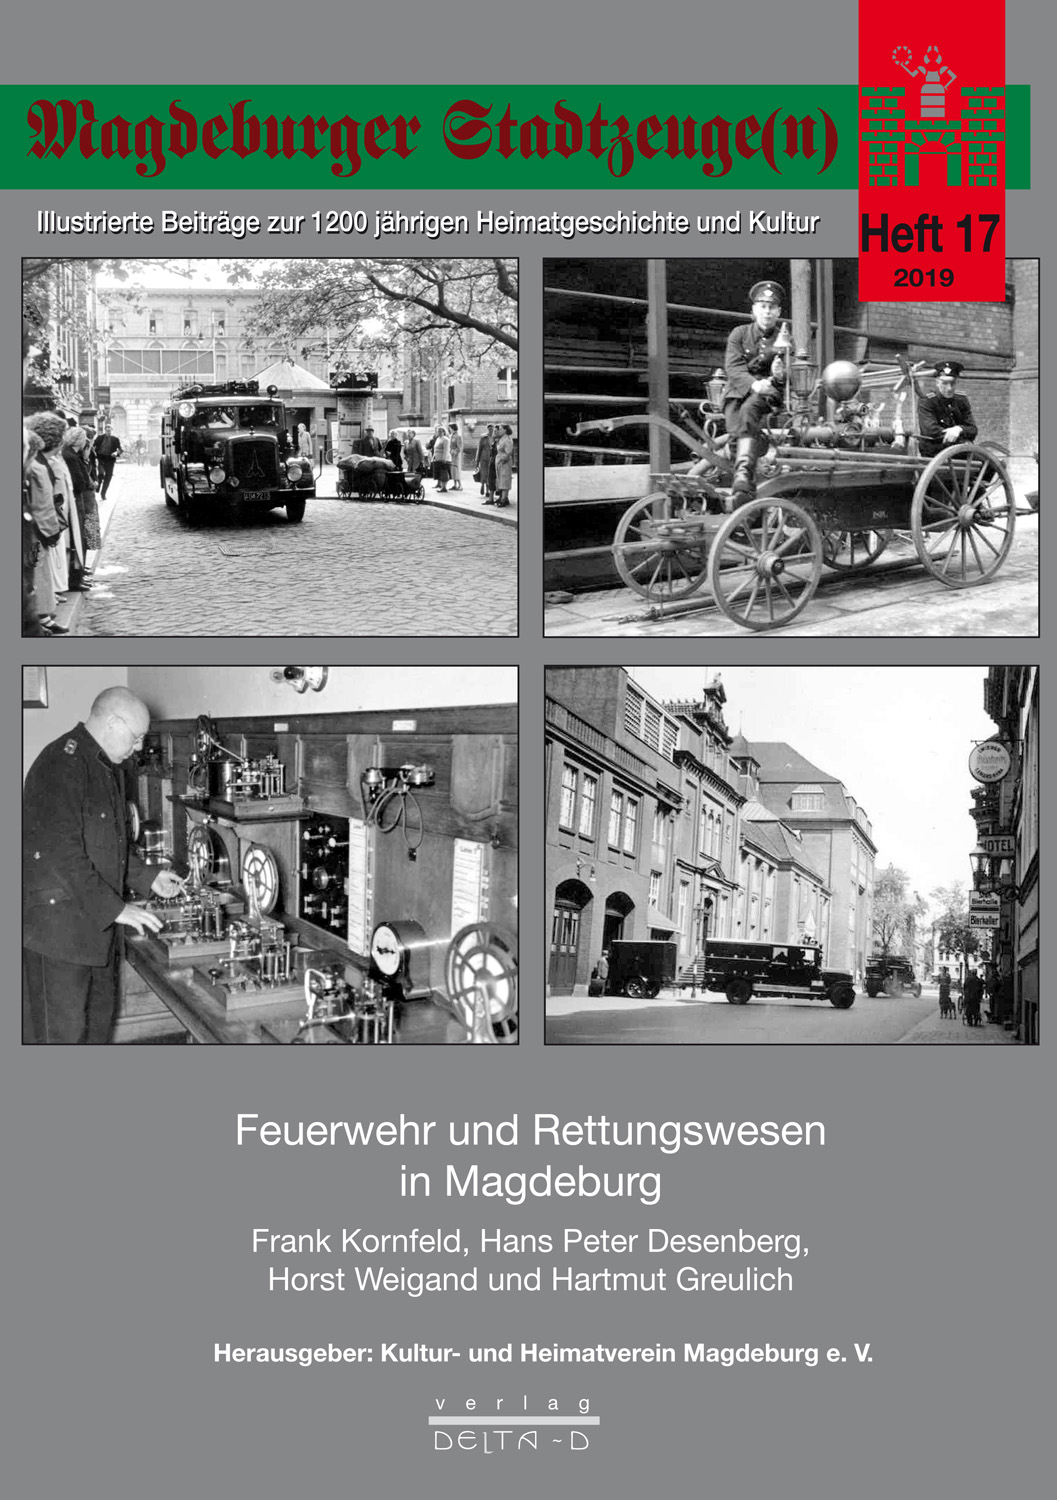 Magdeburger Stadtzeuge(n) Teil 17